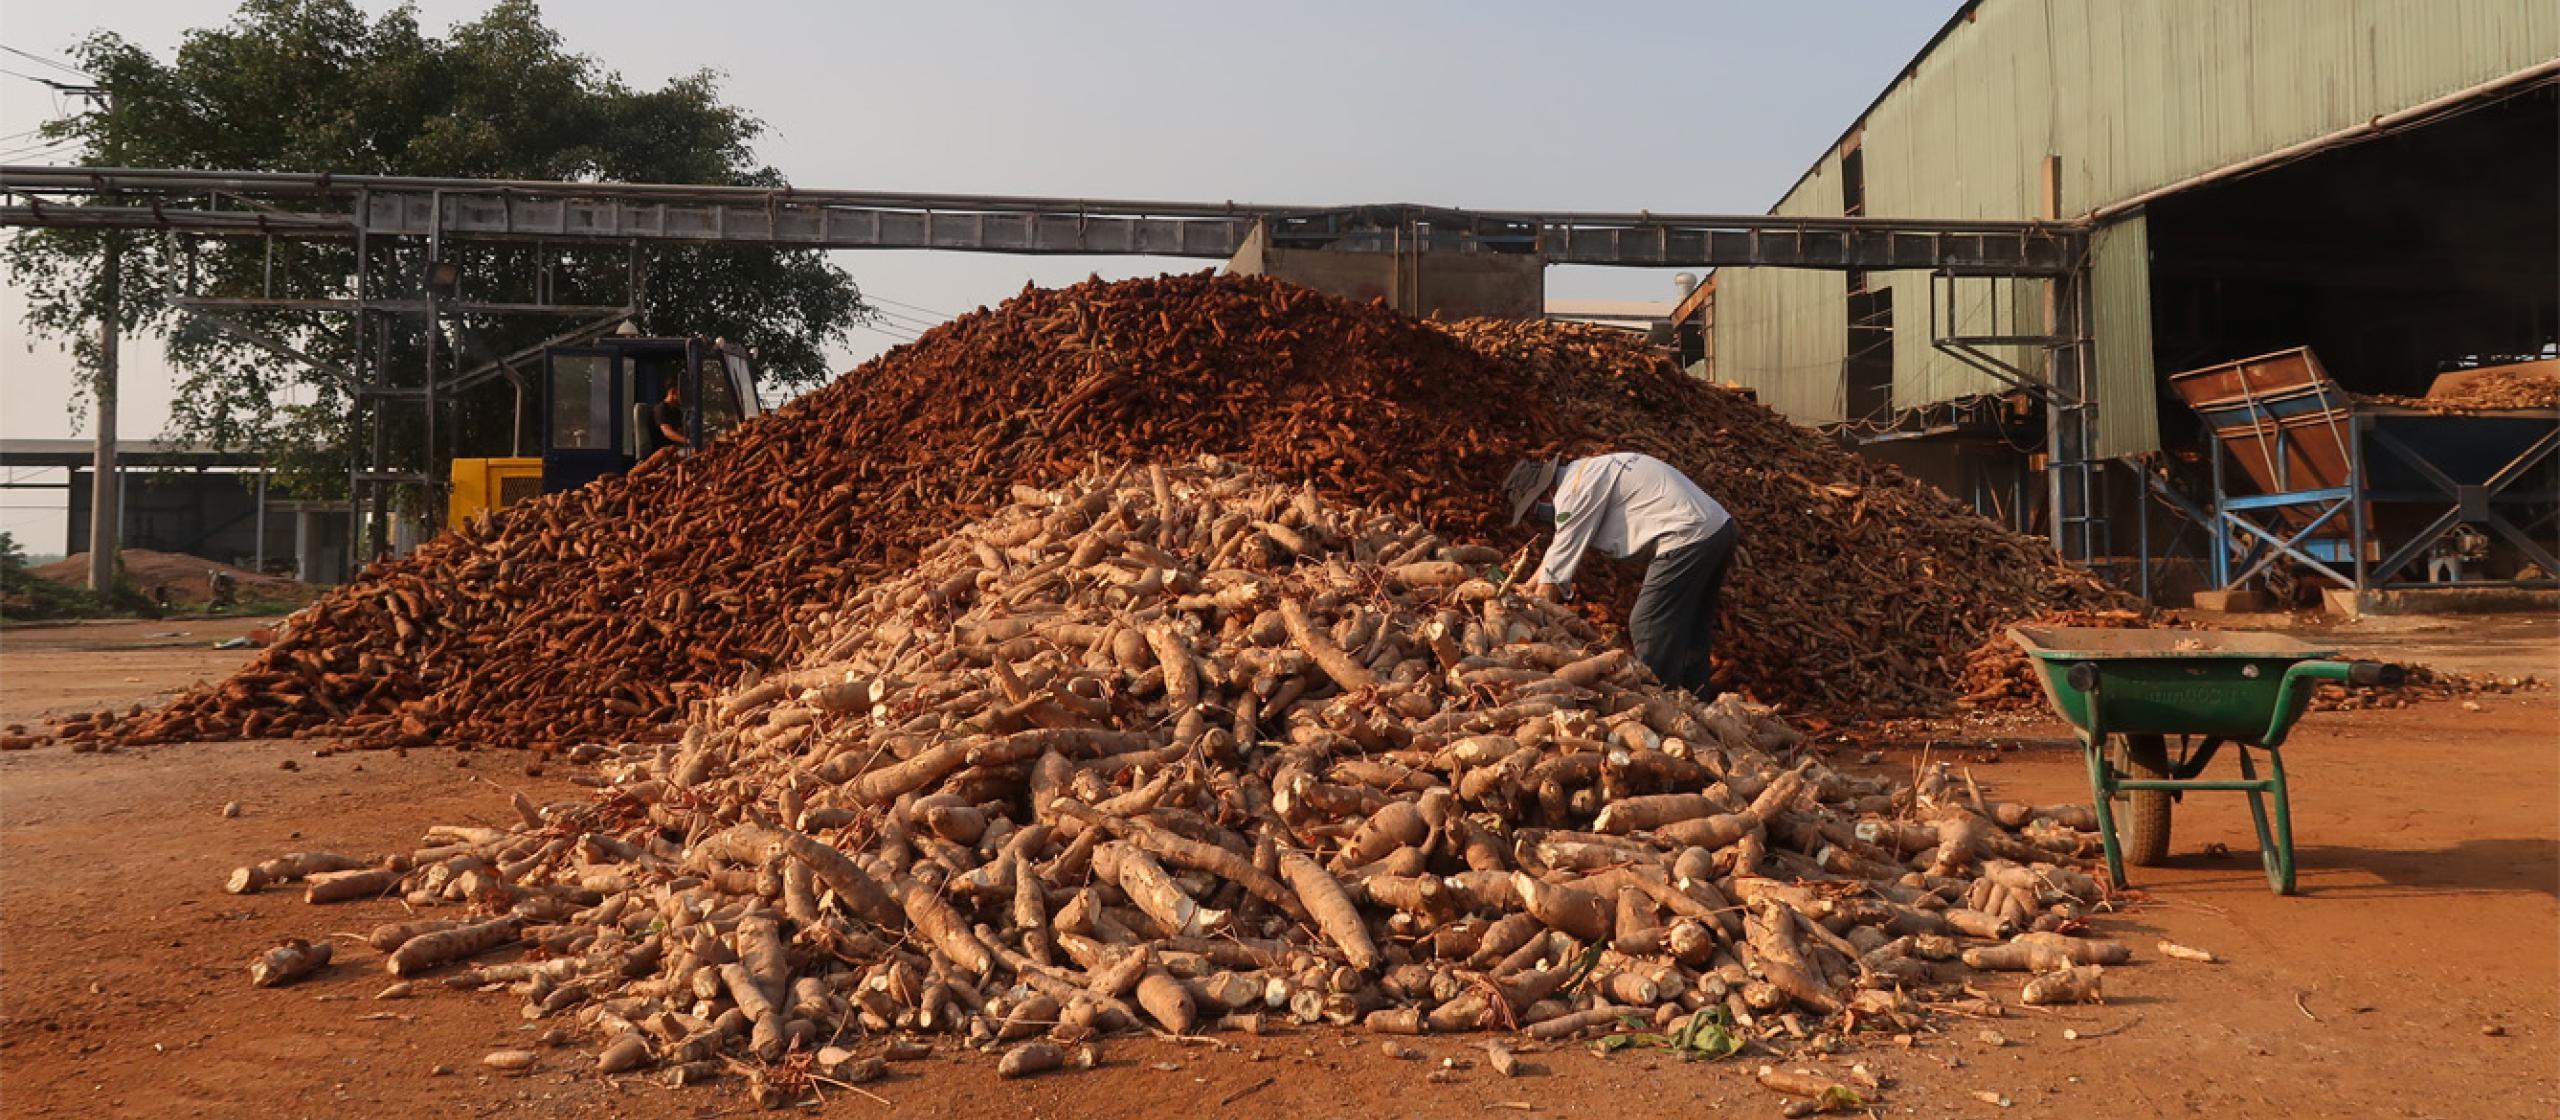 At the cassava processing company, Tay Ninh